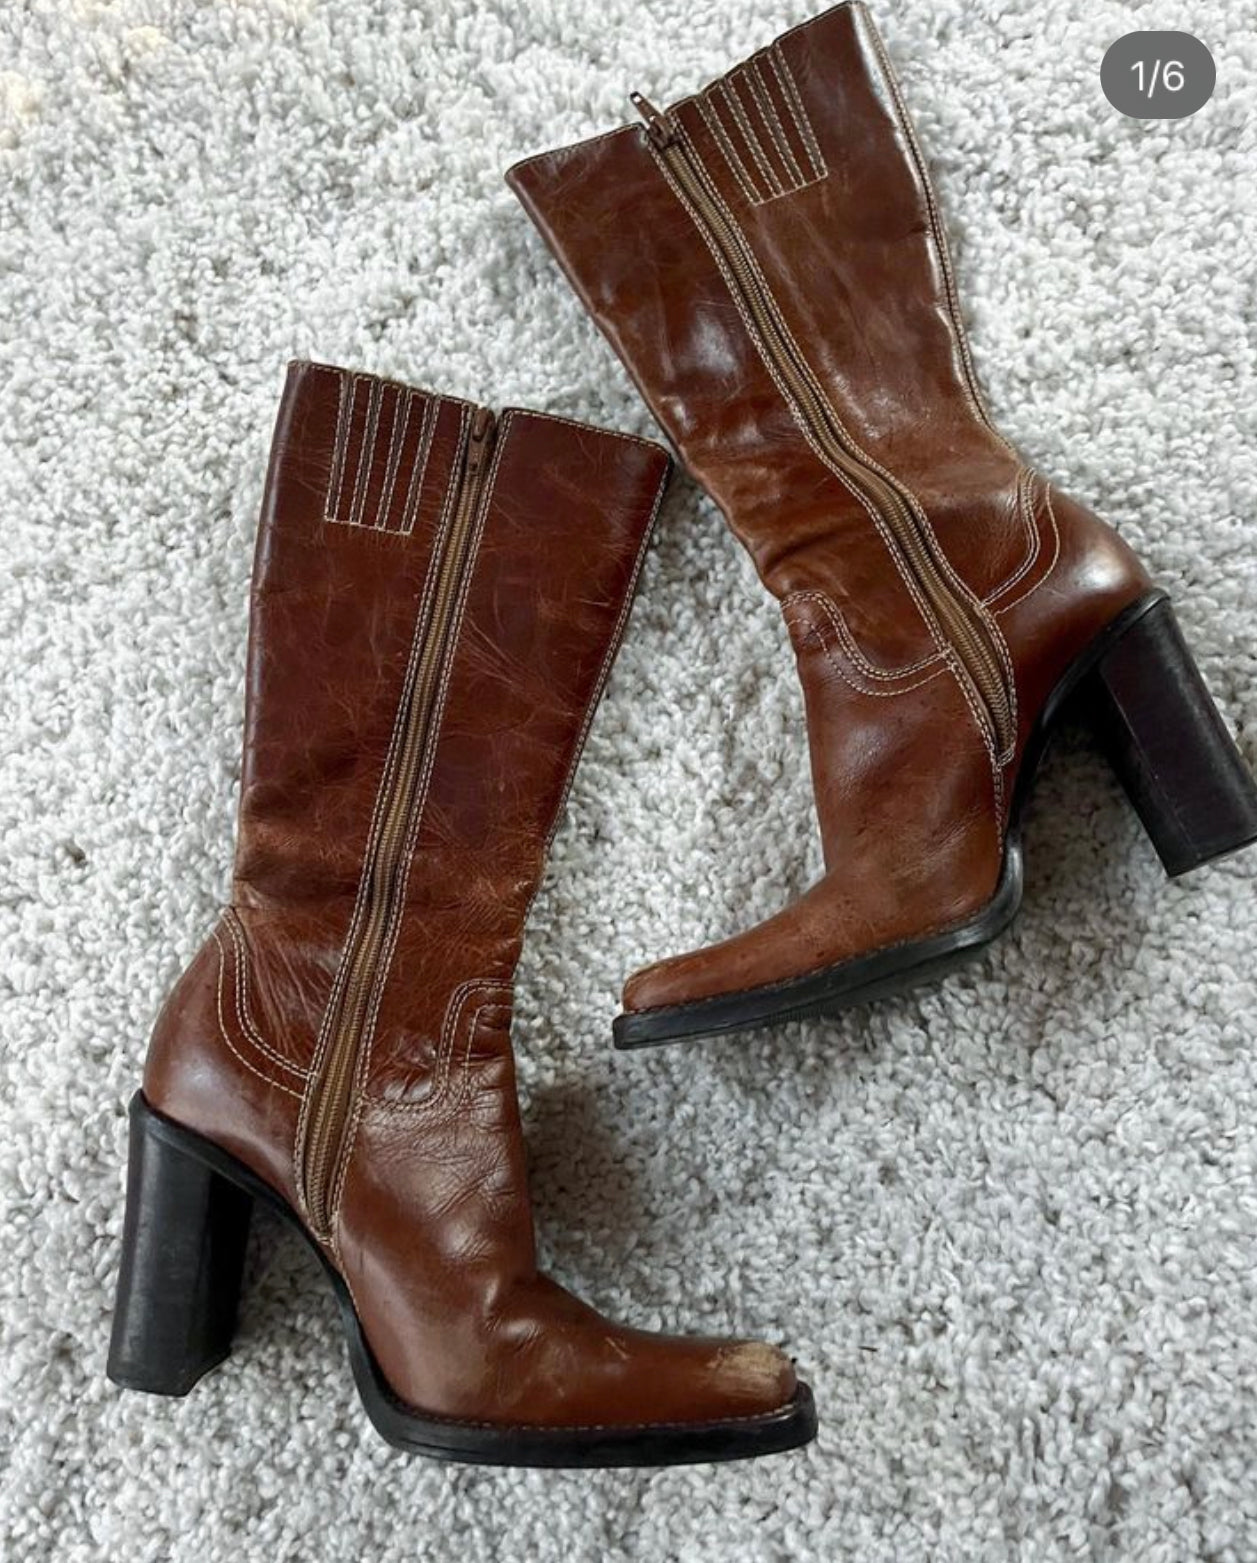 Vintage Steve Madden boots